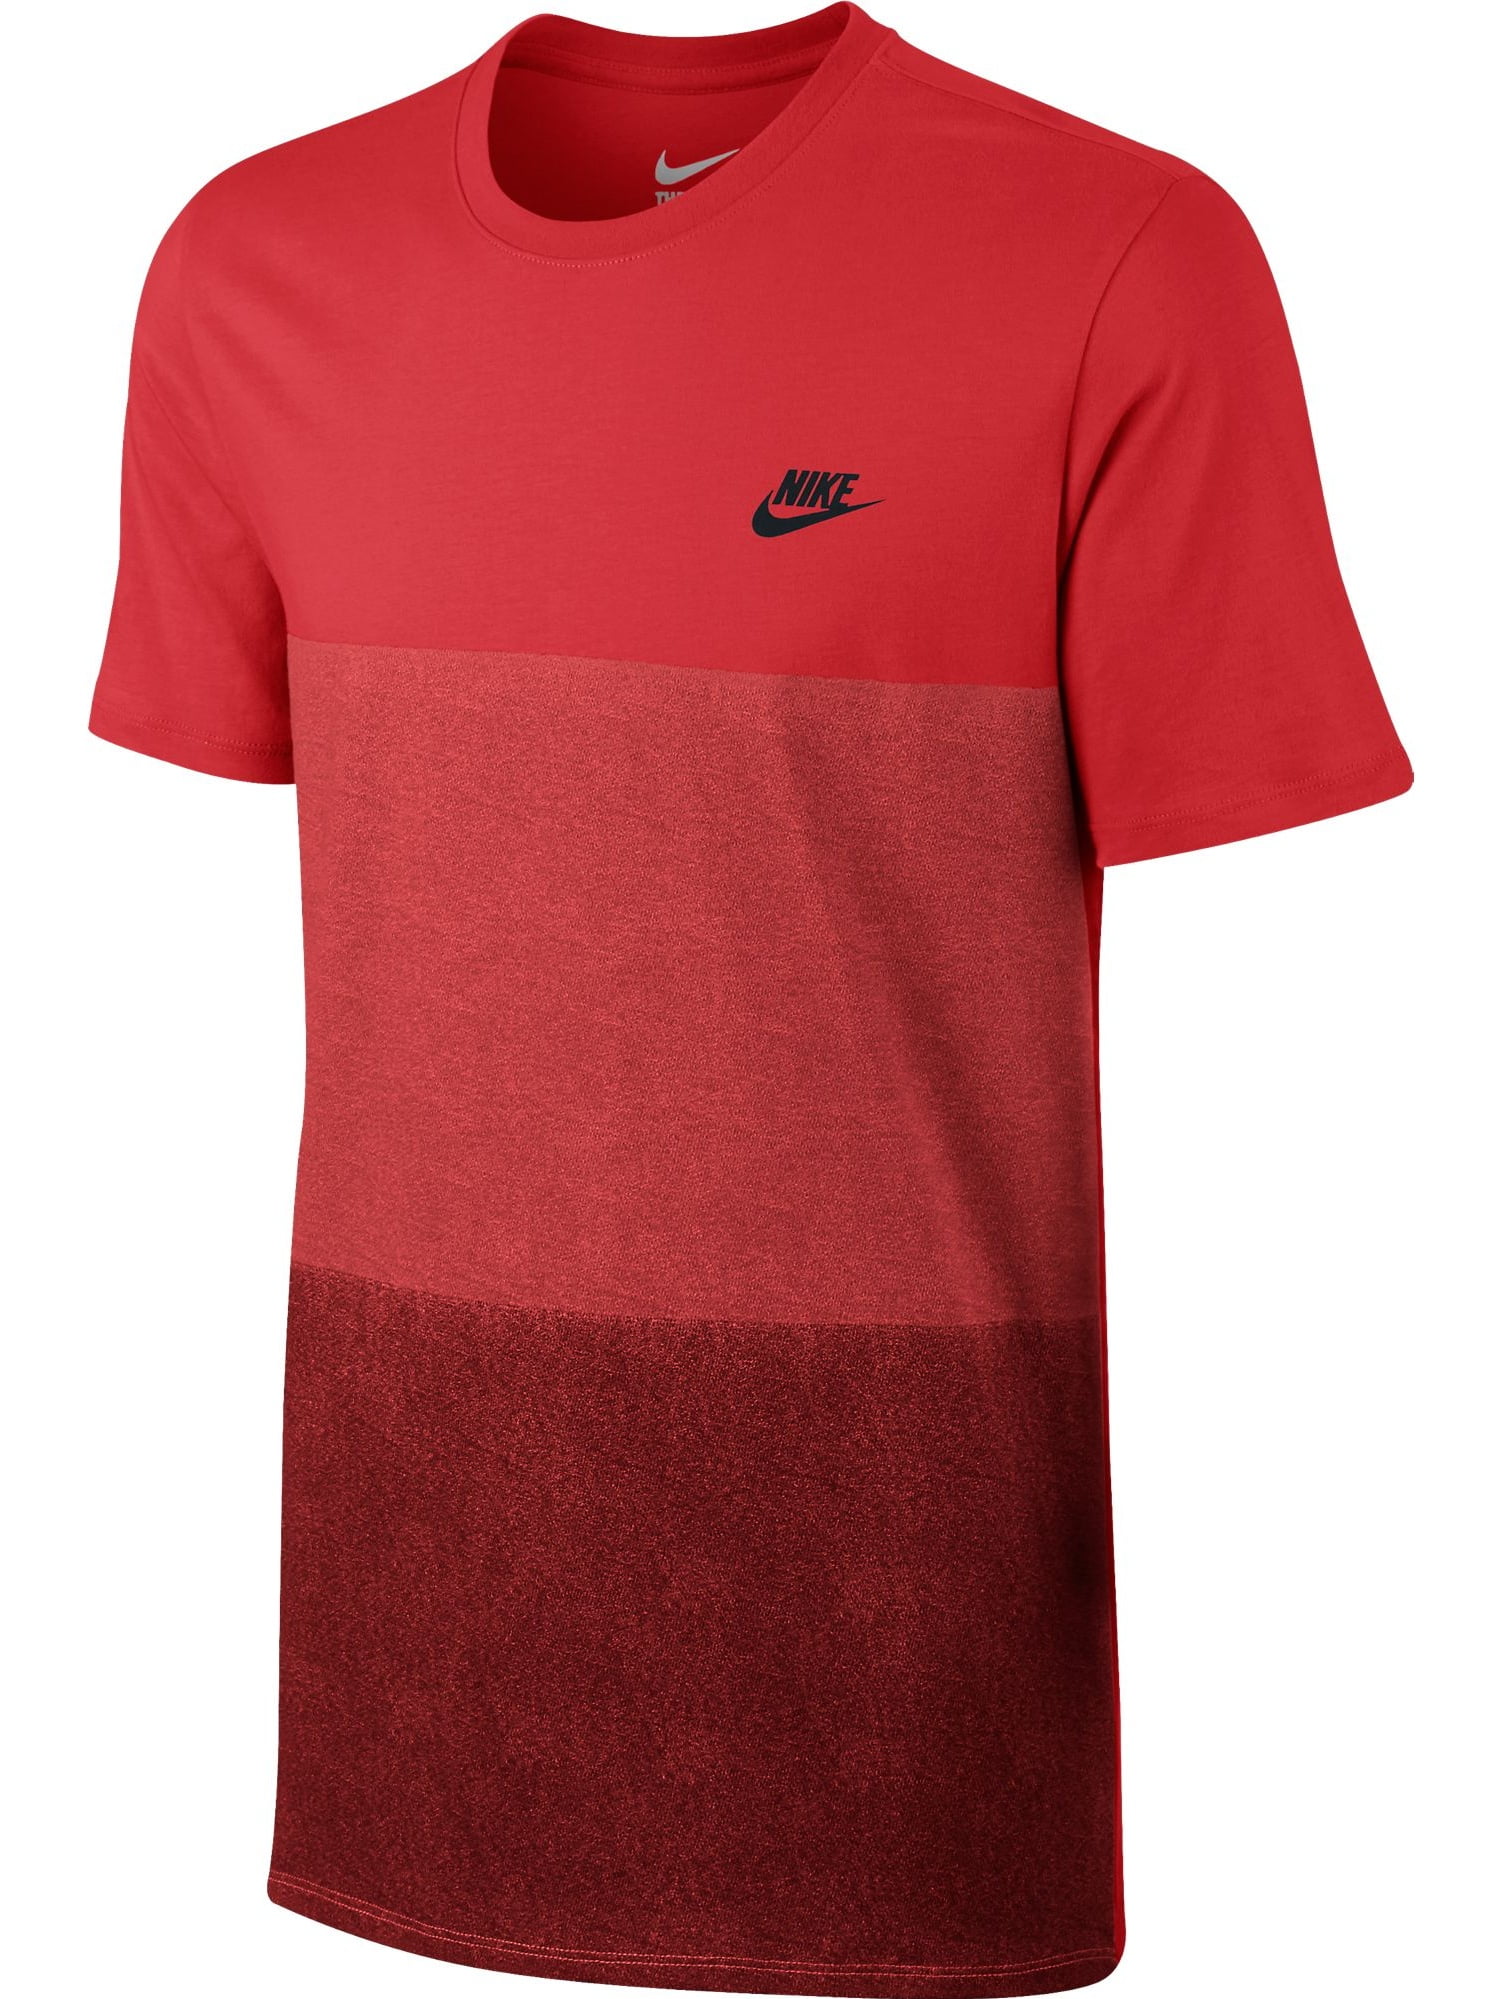 Nike Tonal Colorblock Men's T-Shirt Light Crimson/University Red 779818 ...